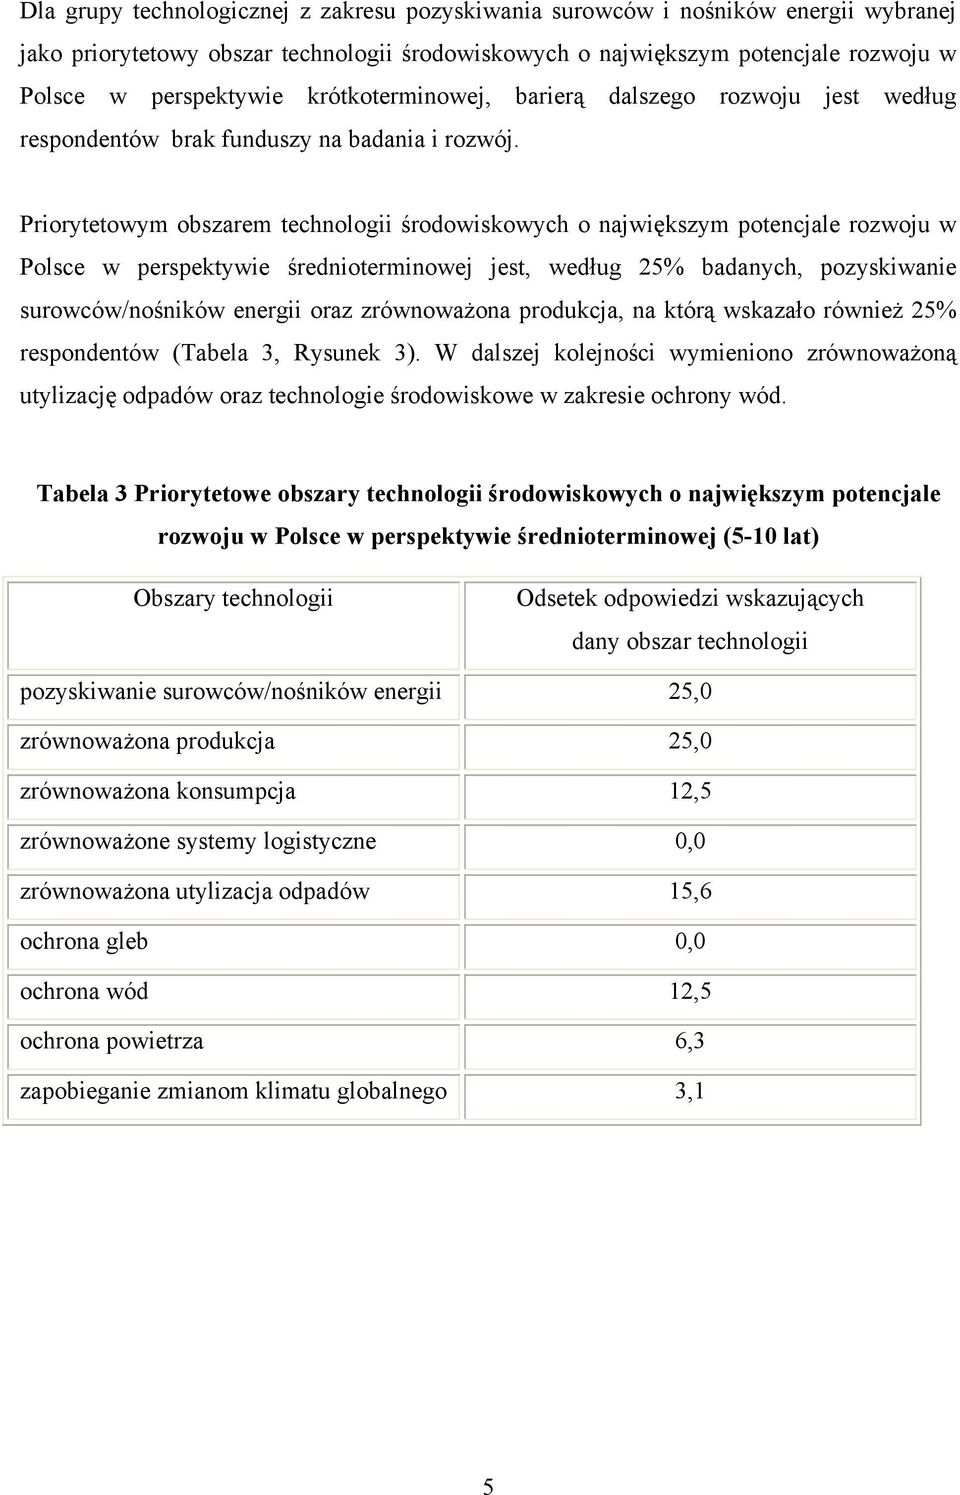 Priorytetowym obszarem technologii środowiskowych o największym potencjale rozwoju w Polsce w perspektywie średnioterminowej jest, według 25% badanych, pozyskiwanie surowców/nośników energii oraz